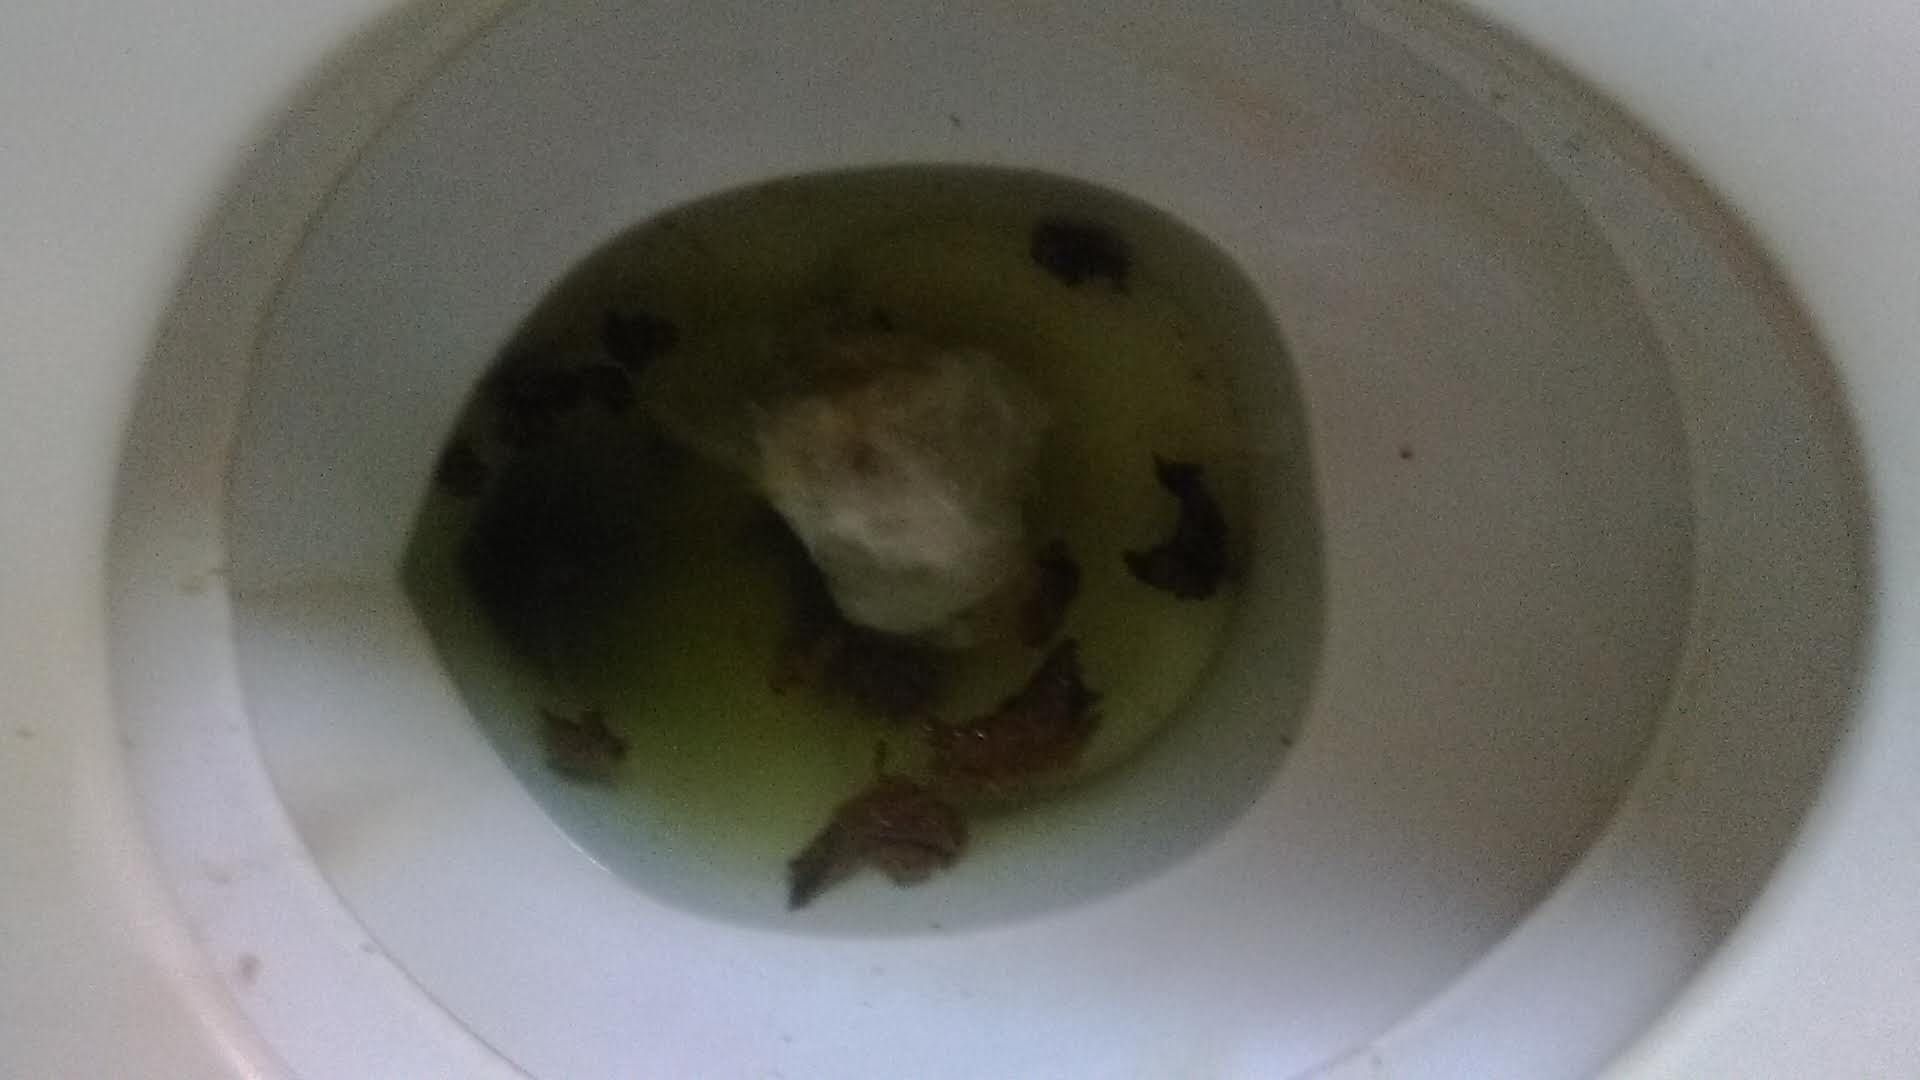 Toilet poop